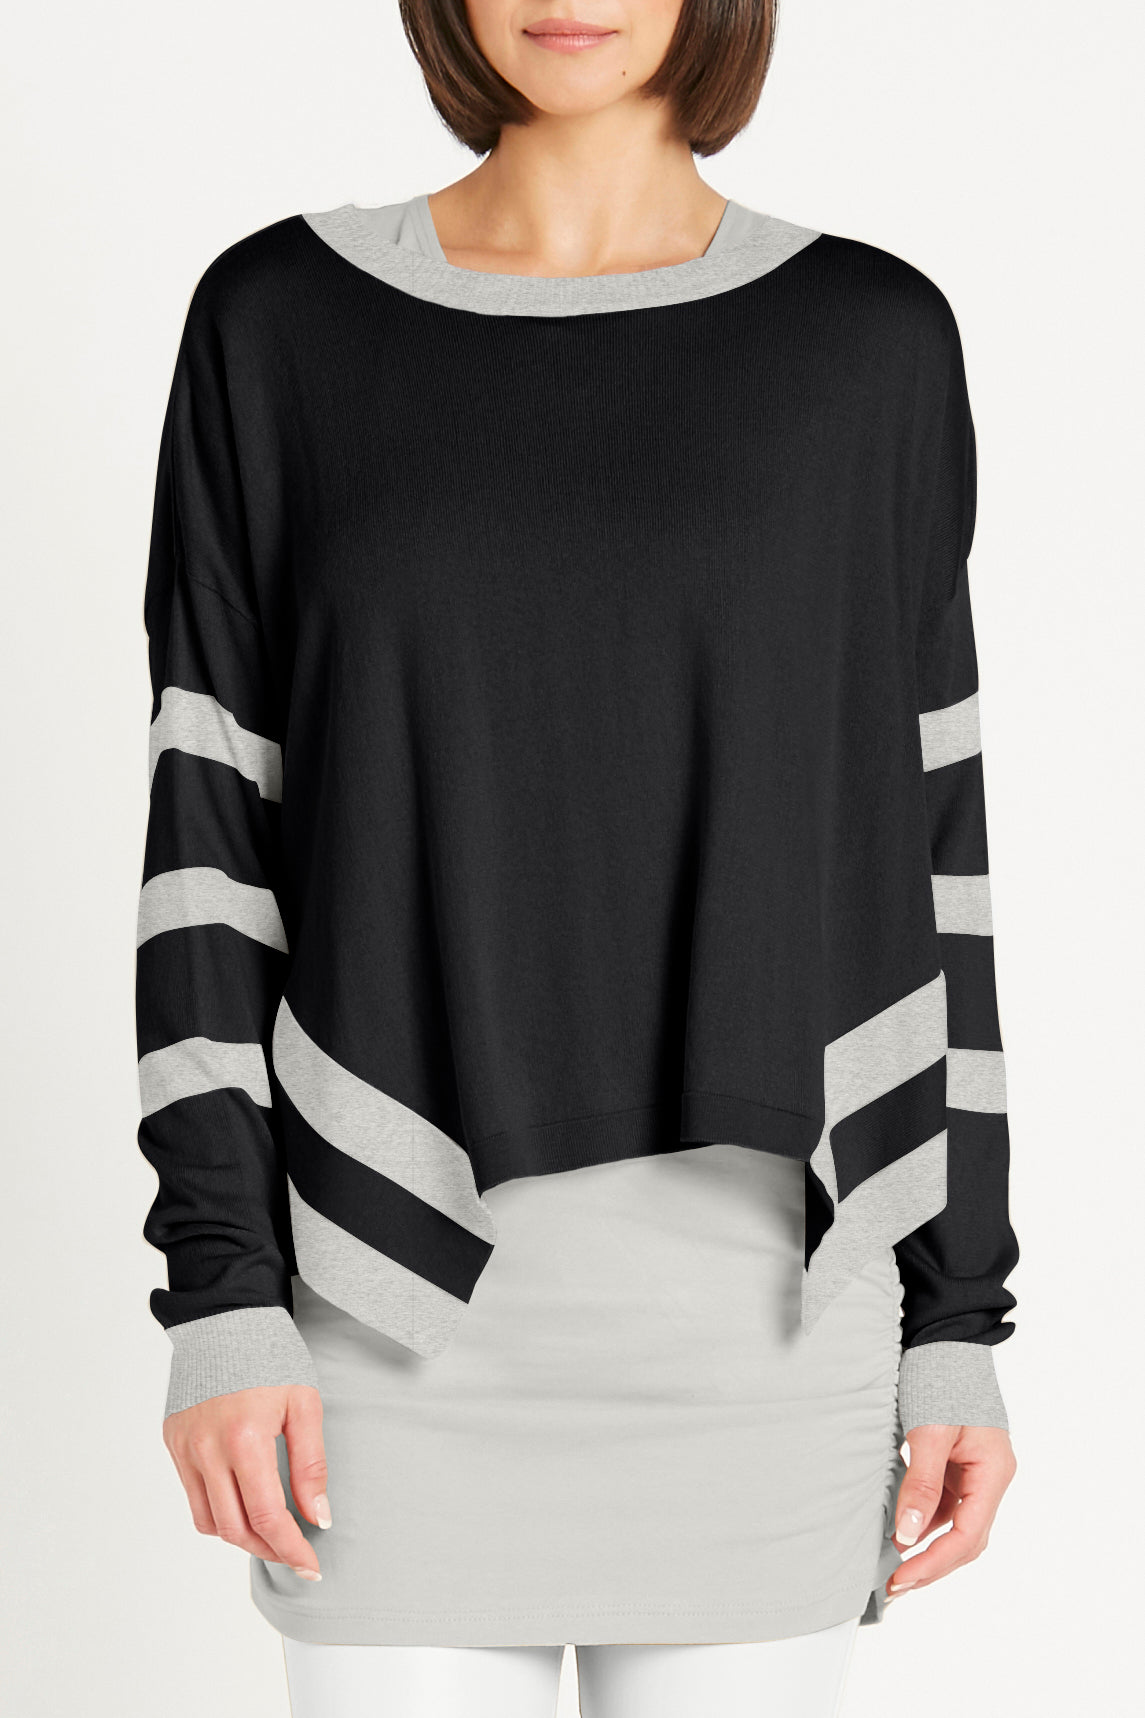 Pima Cotton Side Stripes Crewneck Sweater